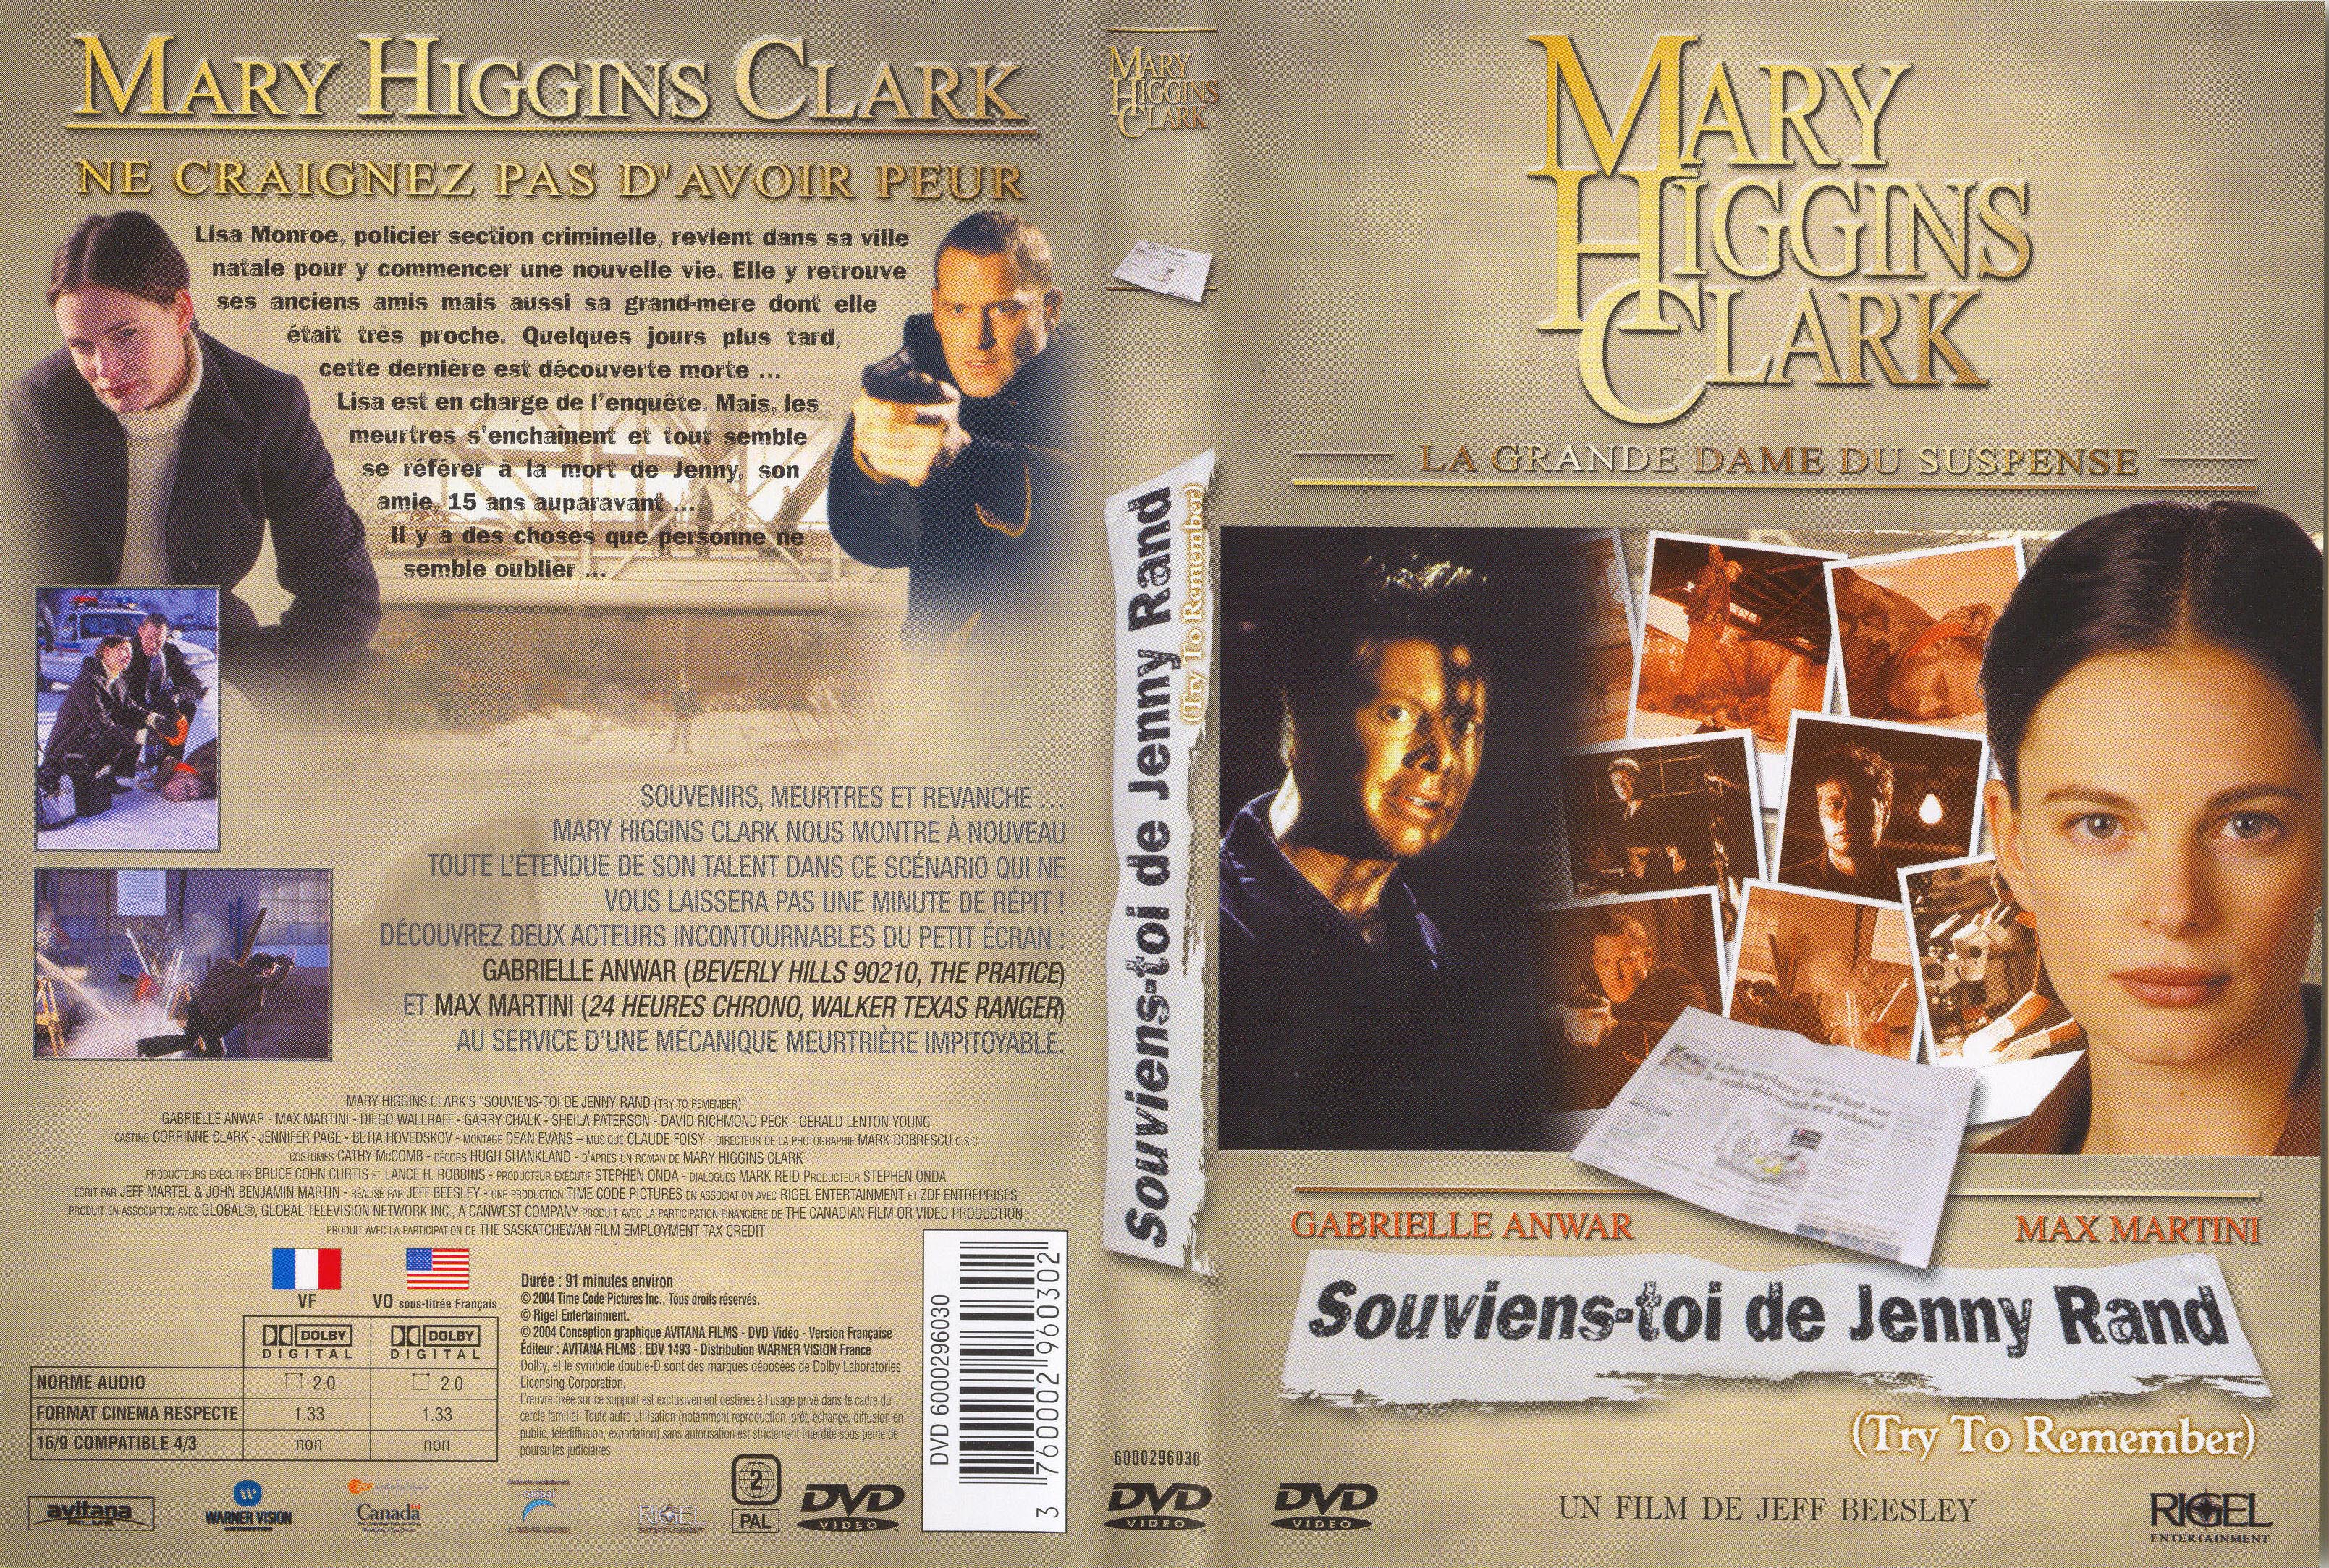 Jaquette DVD de Mary Higgins Clark vol 15 - Souviens toi de Jenny Rand v2 - Cinéma ...3218 x 2167